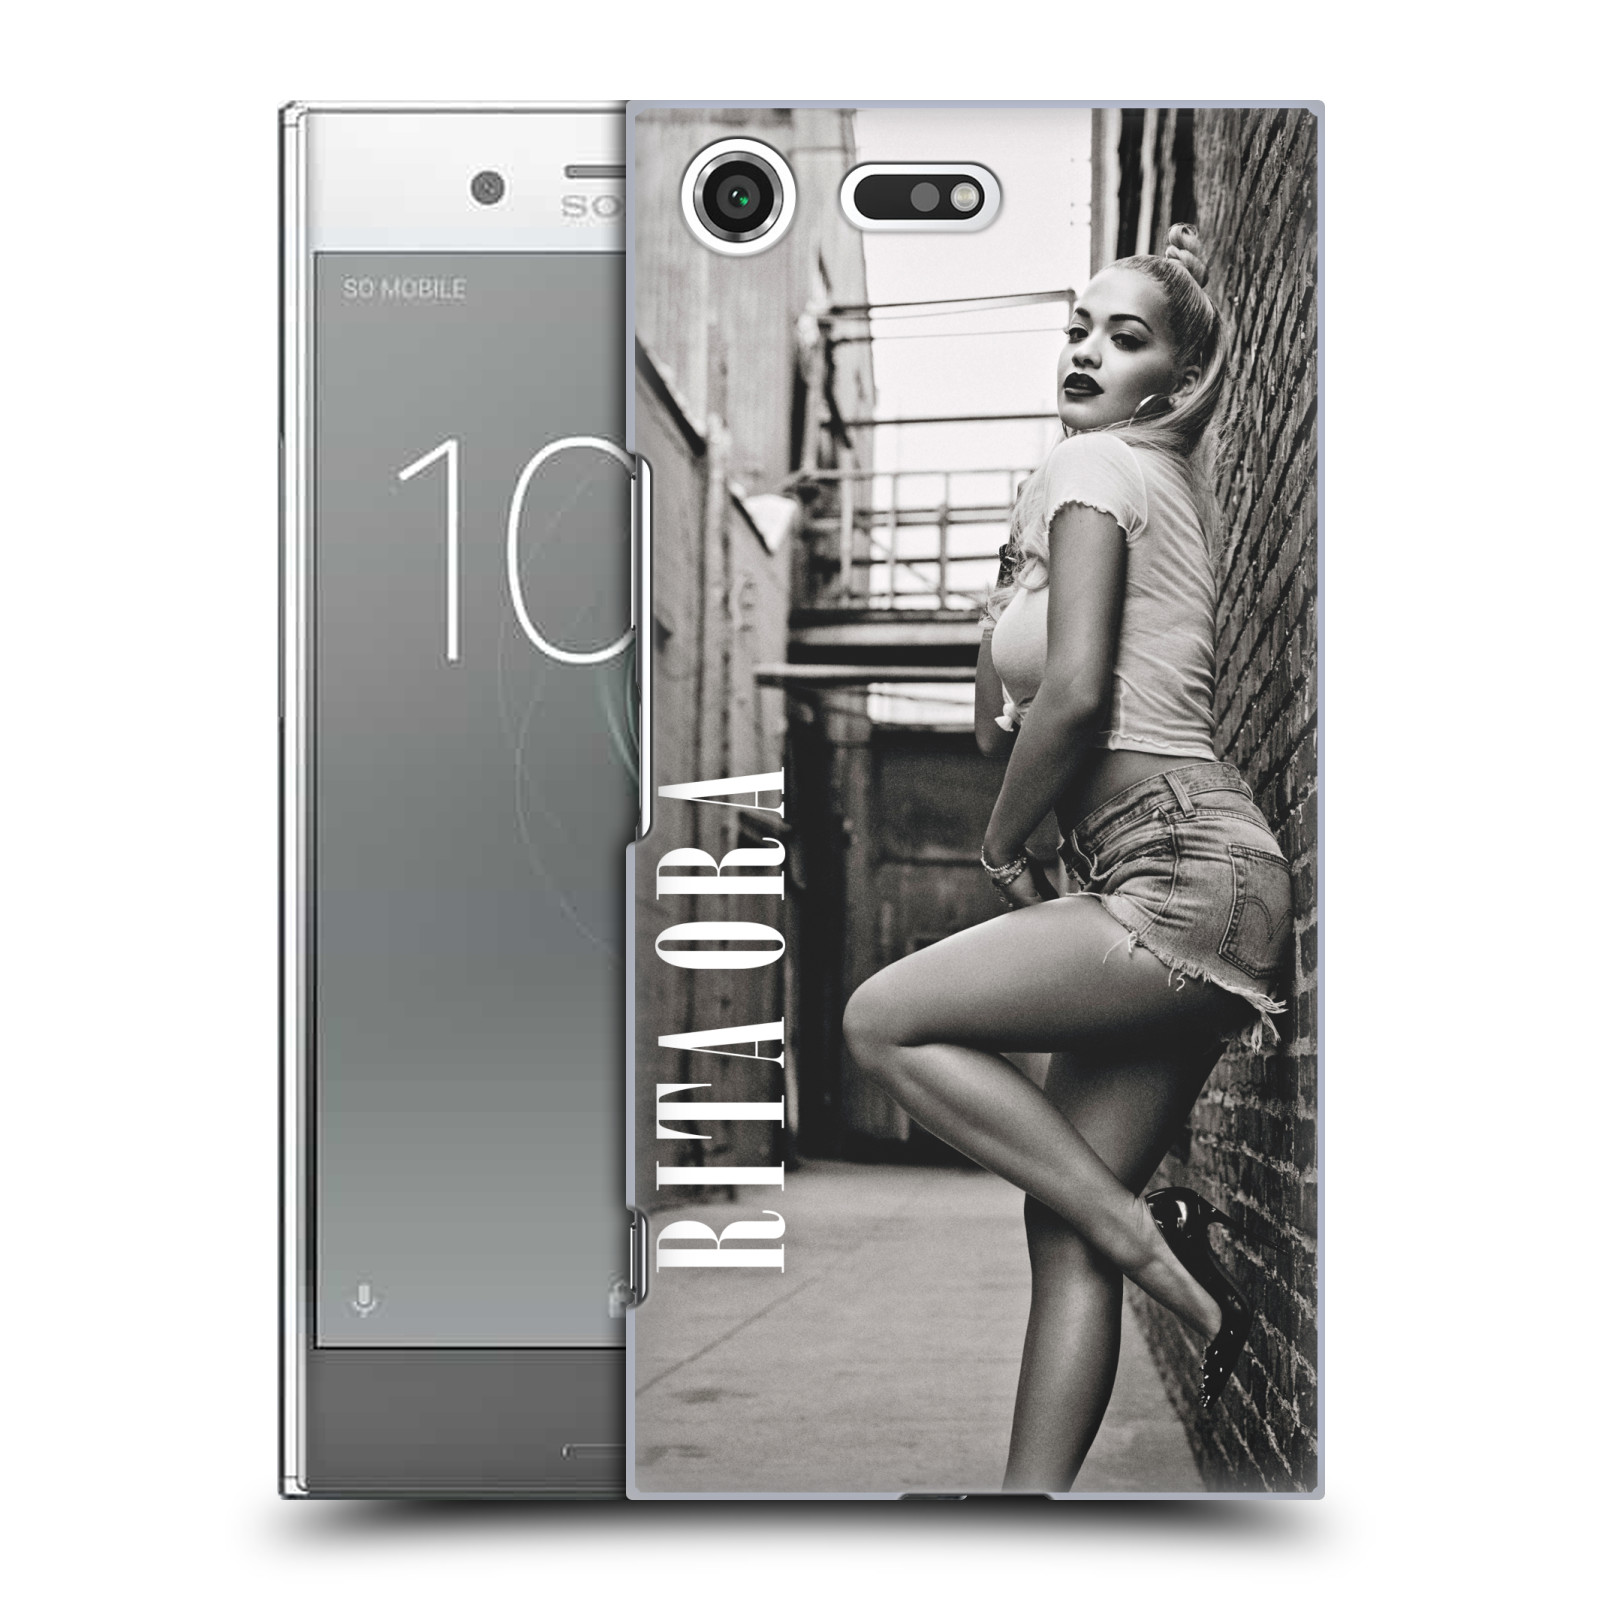 HEAD CASE plastový obal na mobil Sony Xperia XZ PREMIUM zpěvačka Rita Ora foto černobílá